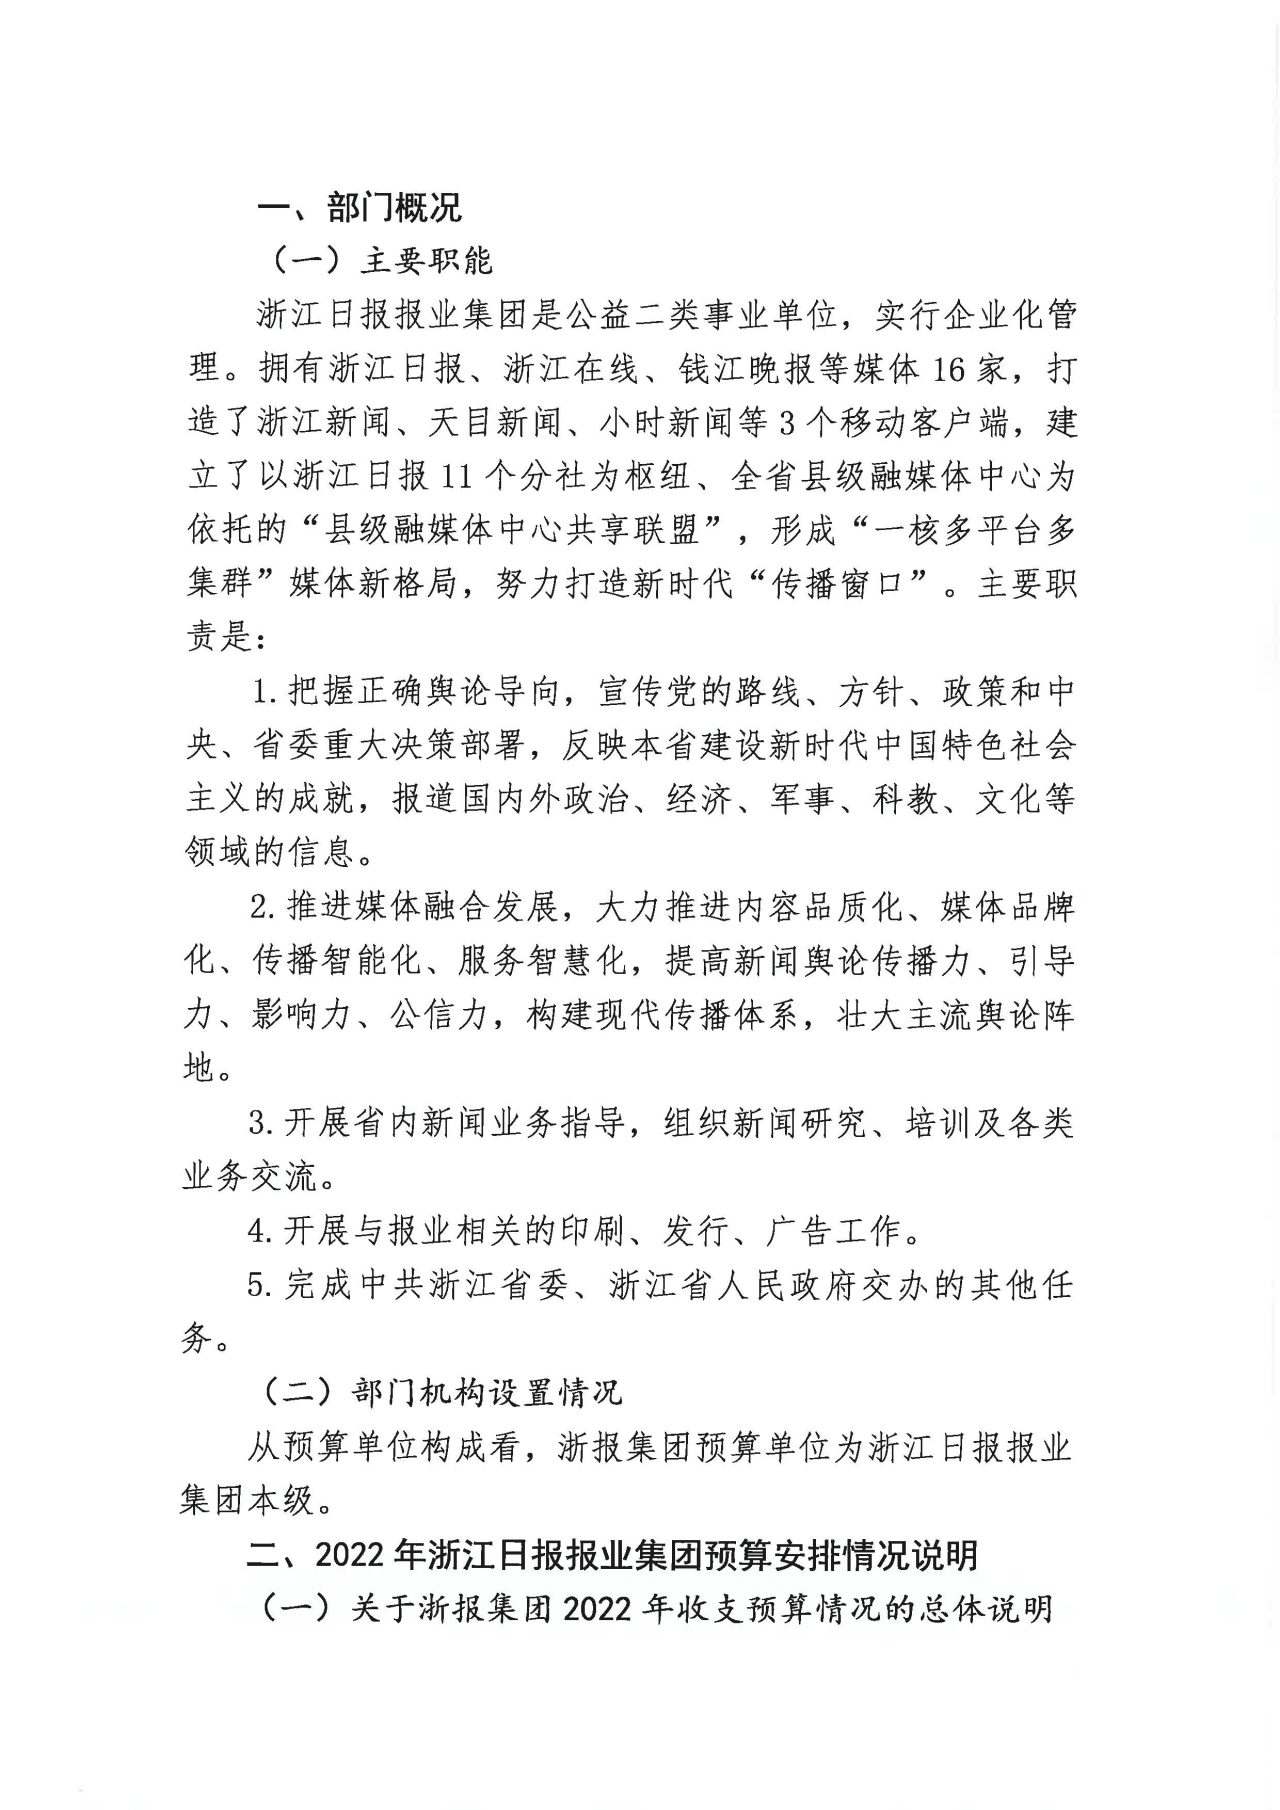 浙江日报报业集团2022年部门预算公开_页面_04.jpg